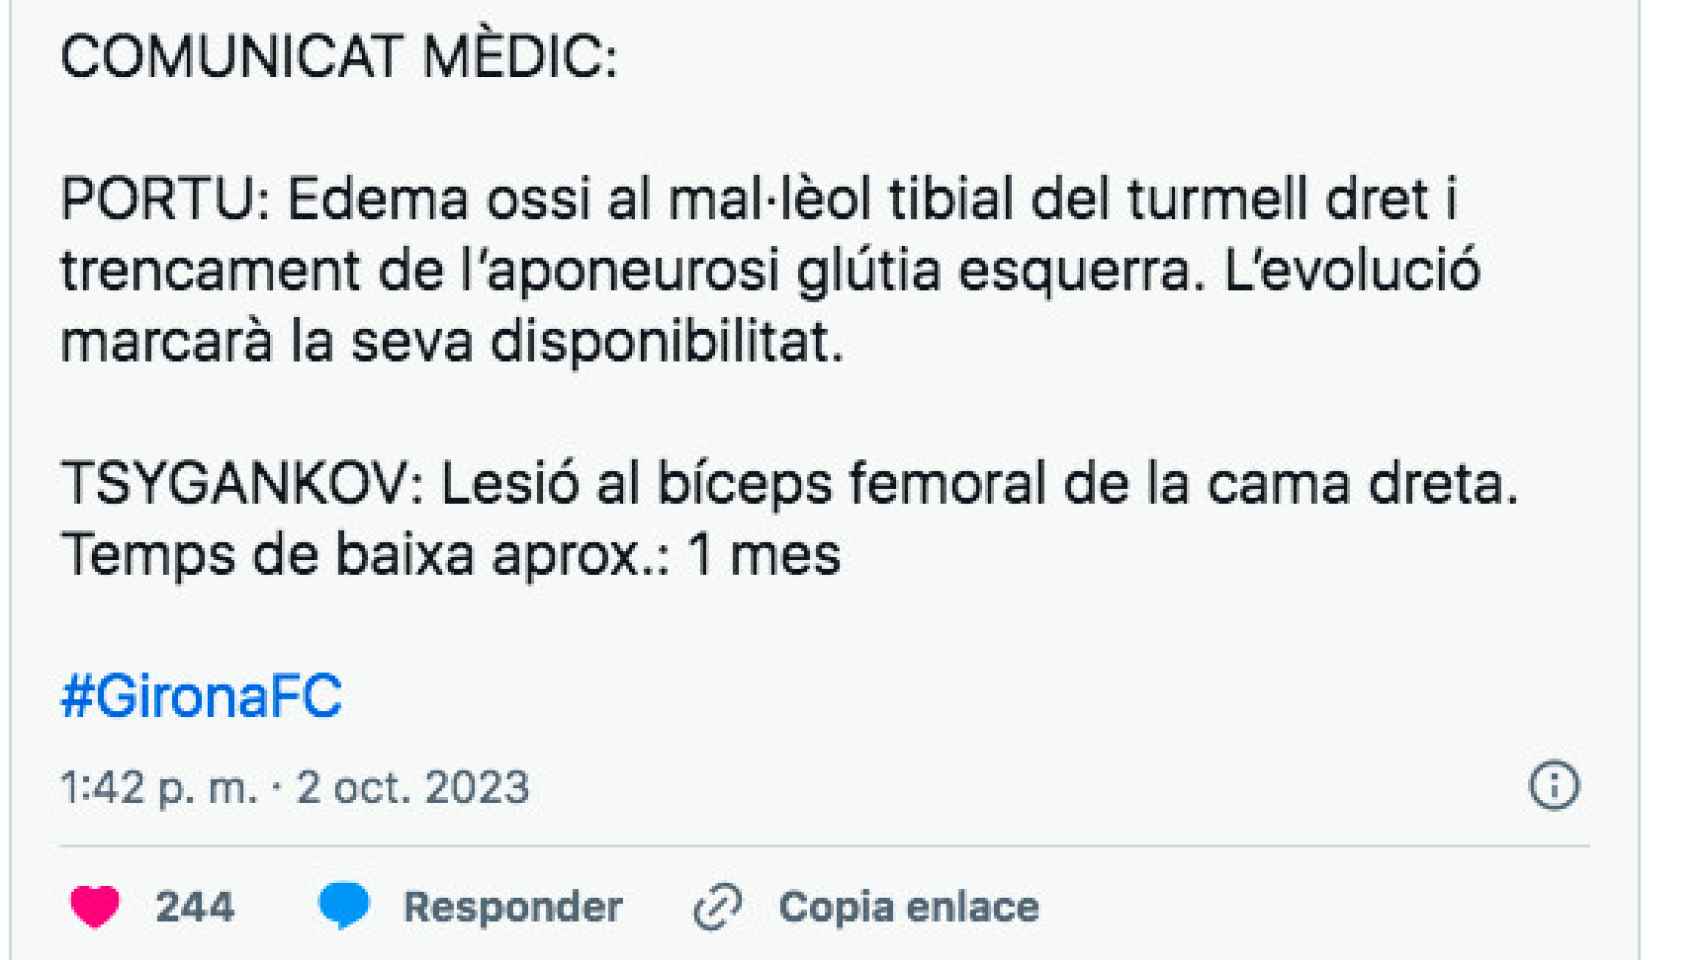 Tuit del Girona sobre la lesión de Portu